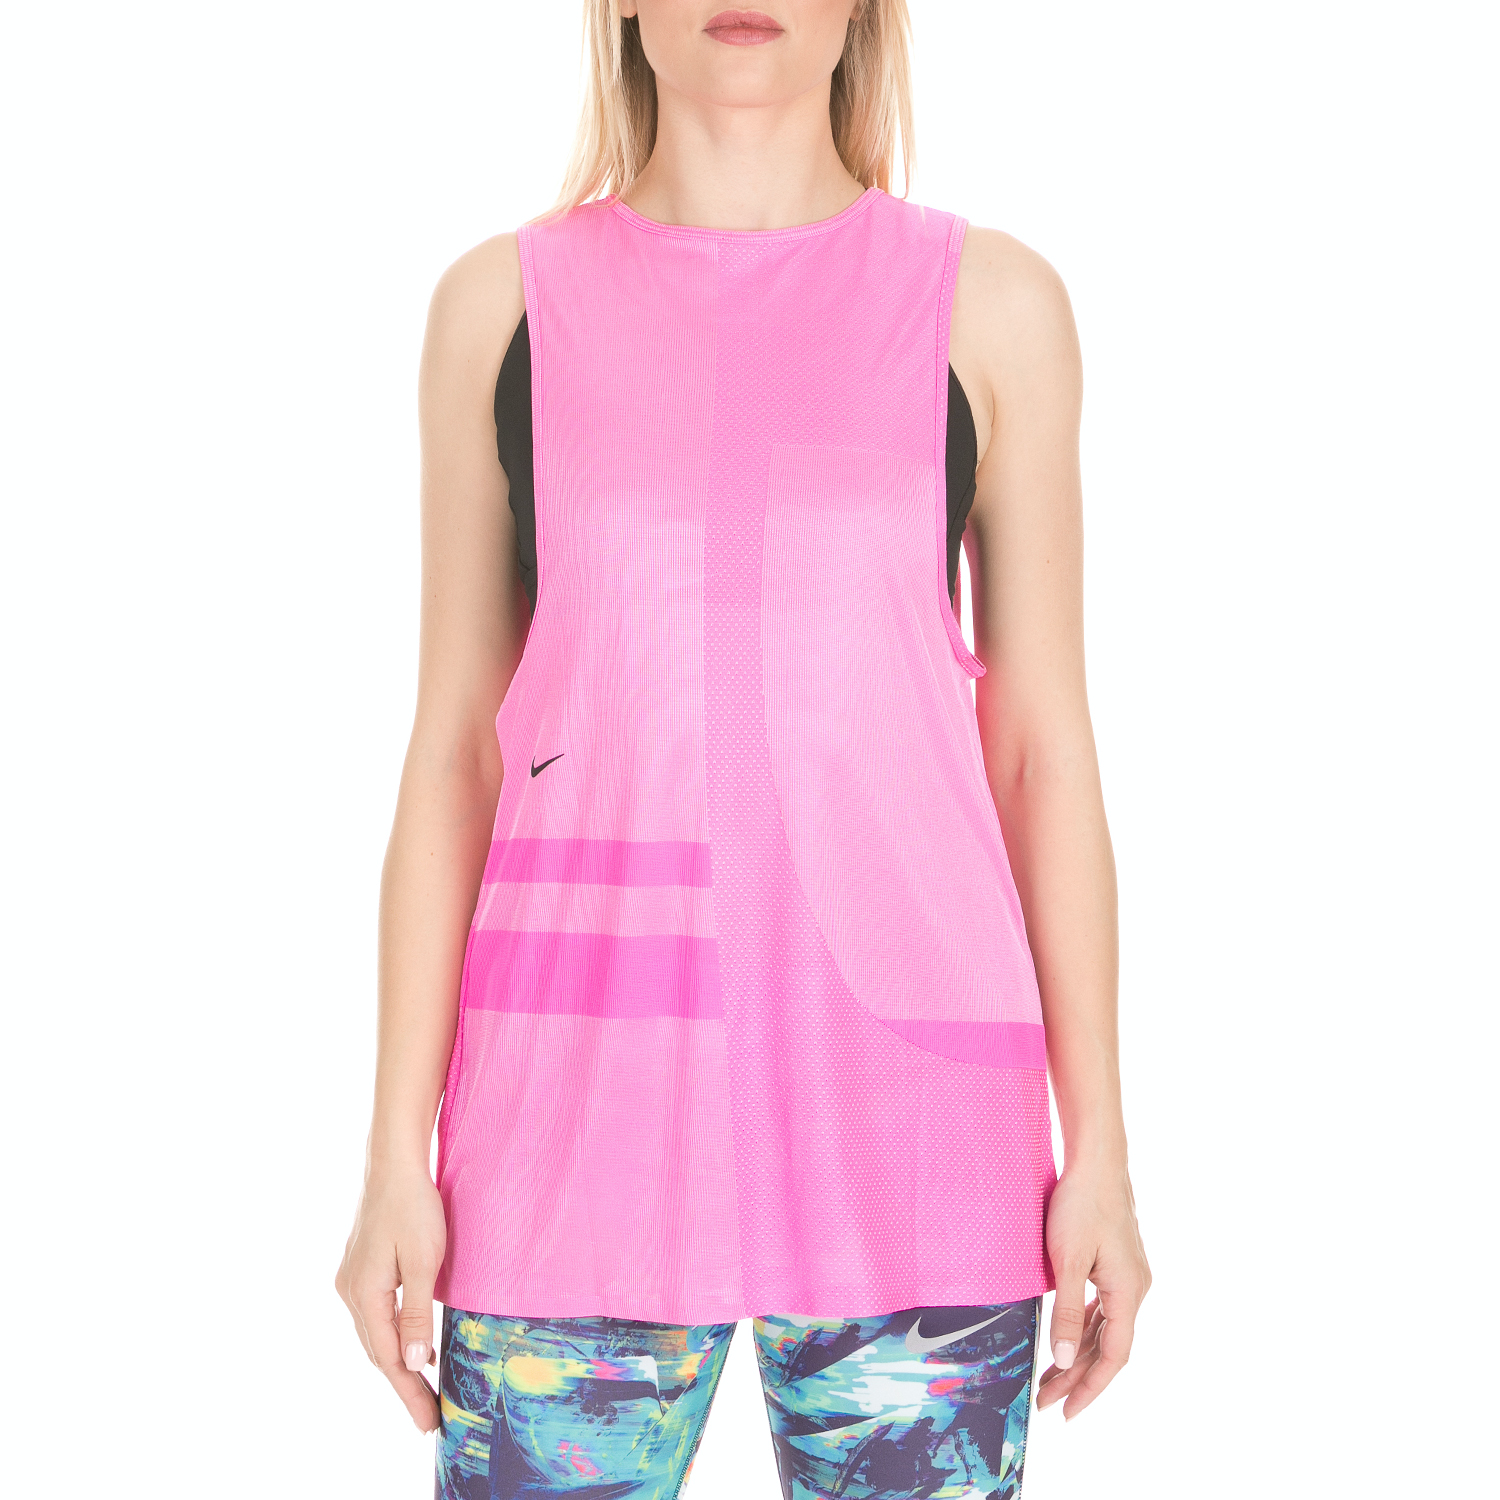 Γυναικεία/Ρούχα/Αθλητικά/T-shirt-Τοπ NIKE - Γυναικείο τοπ NIKE TR TCH PCK KNT TANK MSCLE ροζ